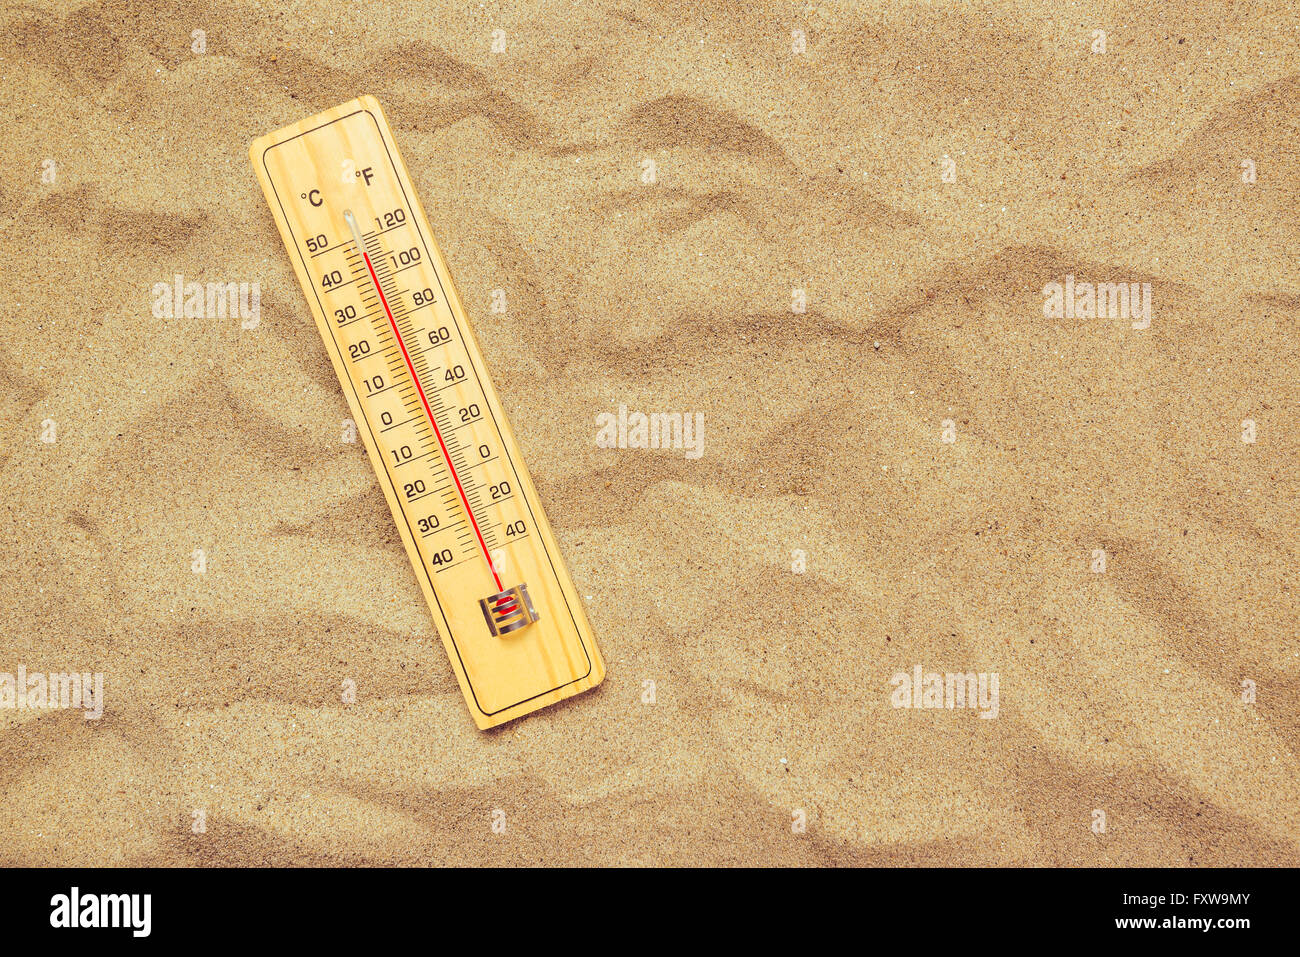 Registrar altas temperaturas, con termómetro Celsius y Fahrenheit escala sobre la cálida arena del desierto. Foto de stock